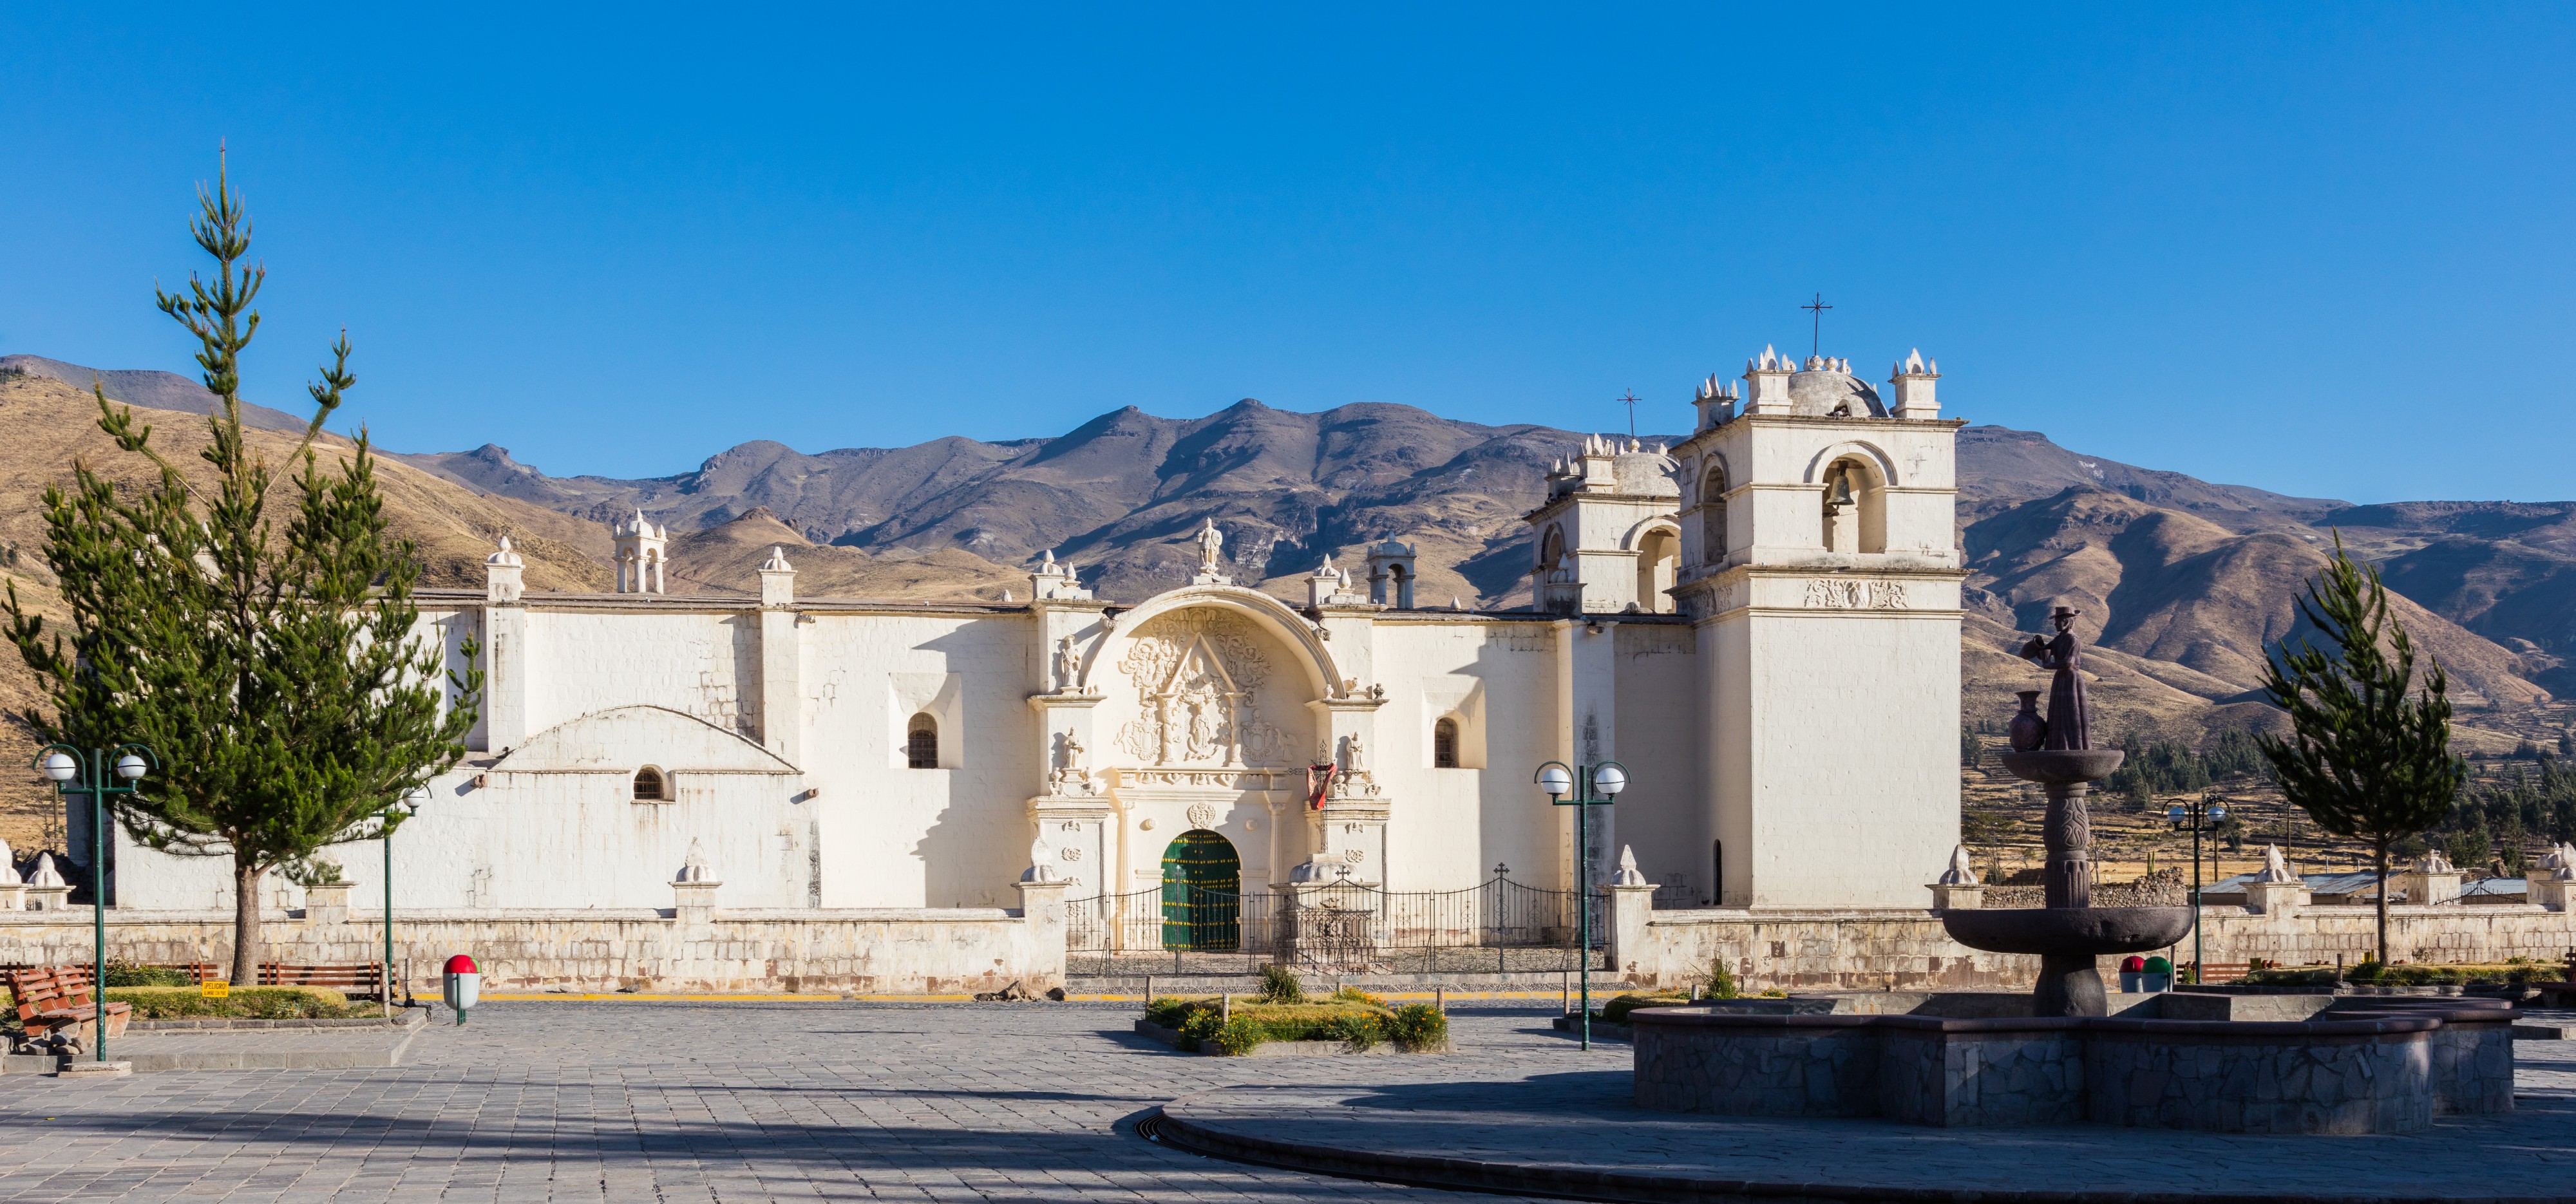 Iglesia Inmaculada Concepción de Yanque, Cañon de Colca, Perú, 2015-08-02, DD 65